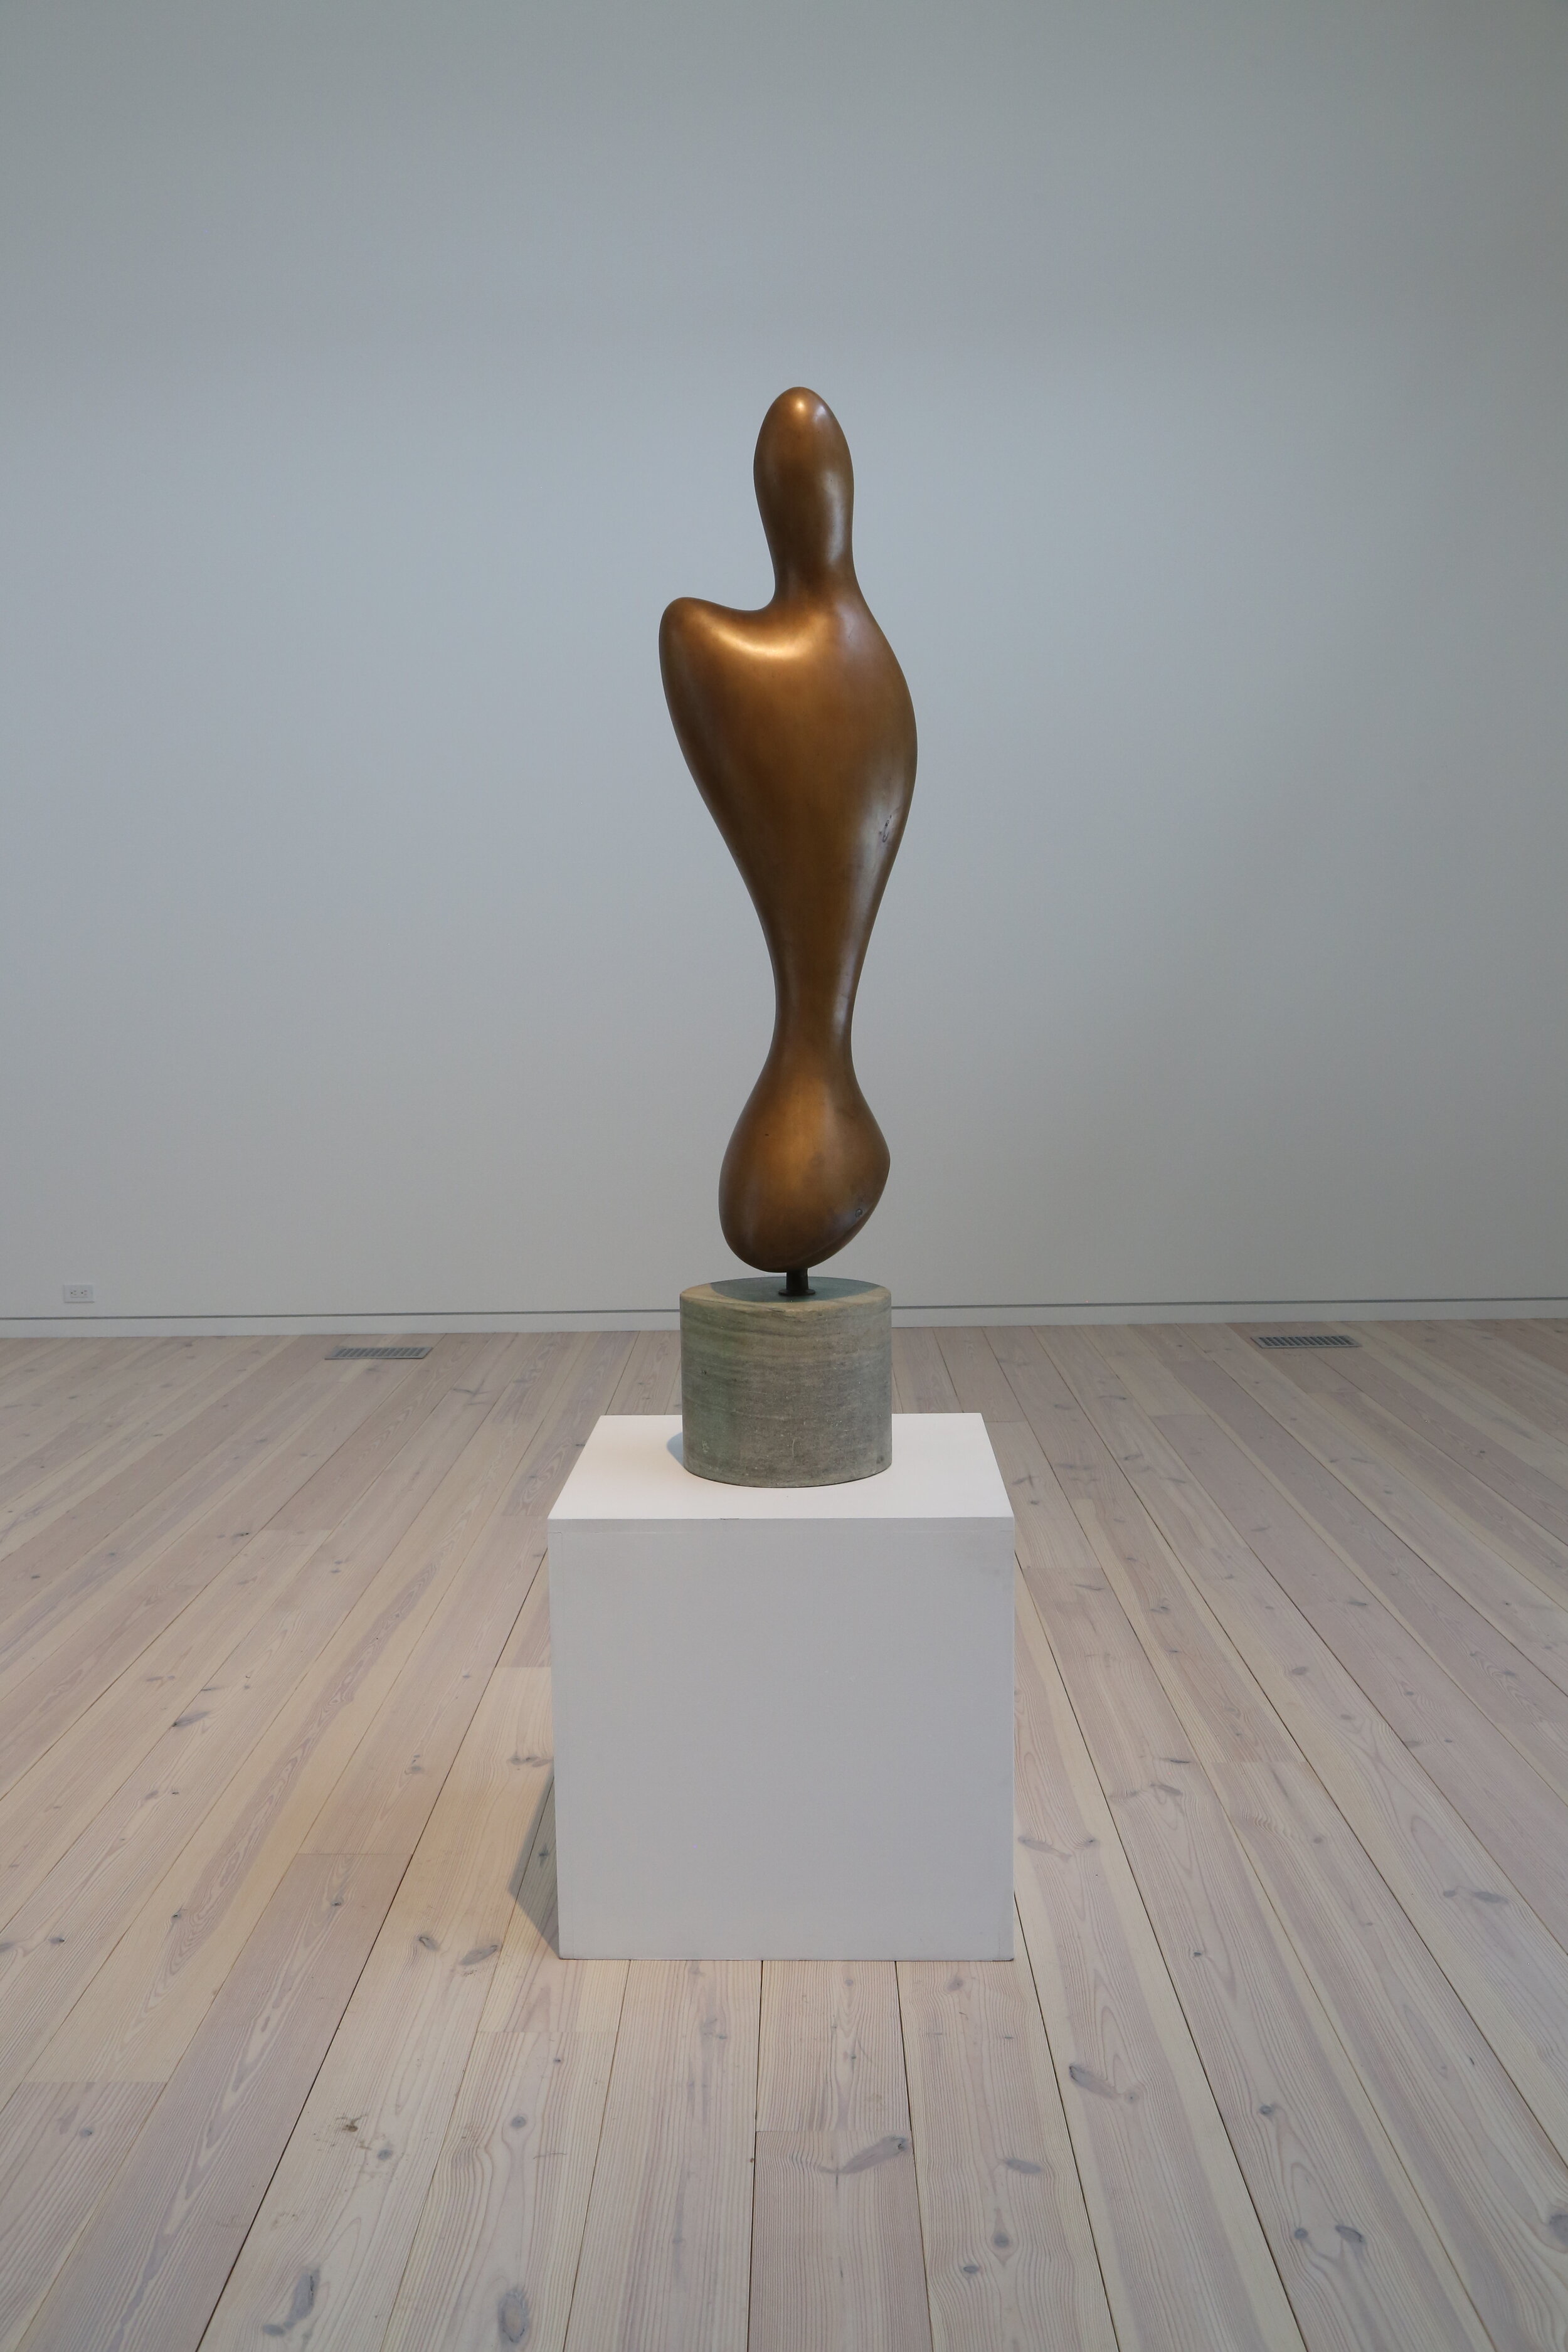  Jean (Hans) Arp   Entité ailée,  1961 (conceived), 1964 - 67 (cast) bronze edition 2/3 + 3 AP 50 inches (125 cm)  